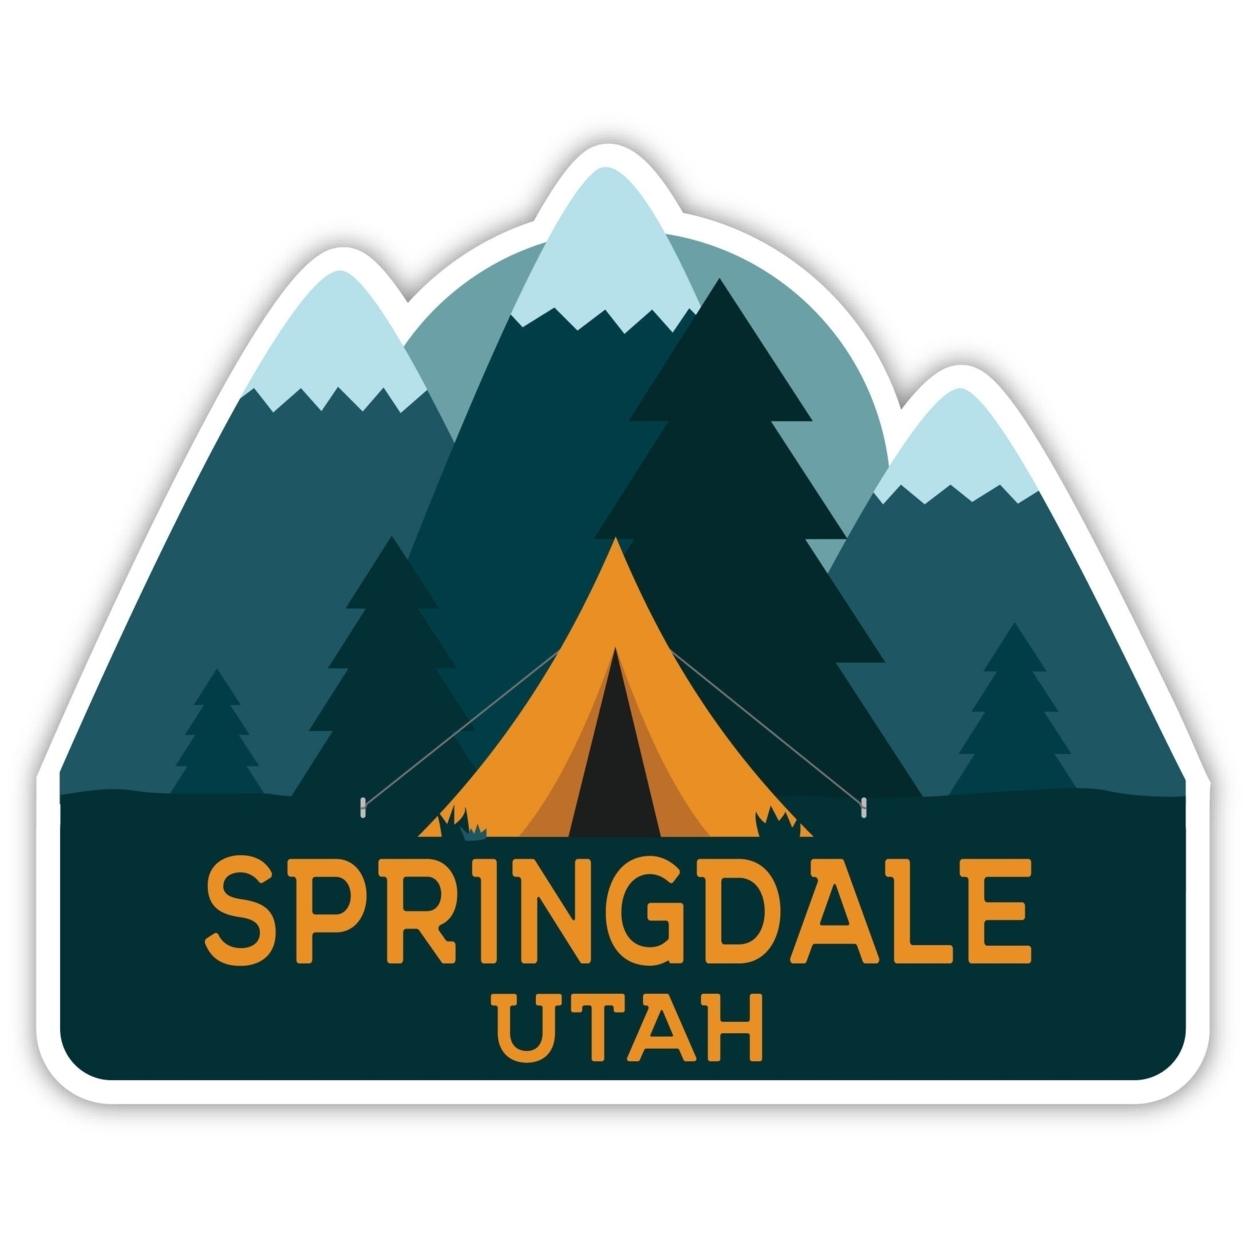 Springdale Utah Souvenir Decorative Stickers (Choose Theme And Size) - Single Unit, 4-Inch, Tent